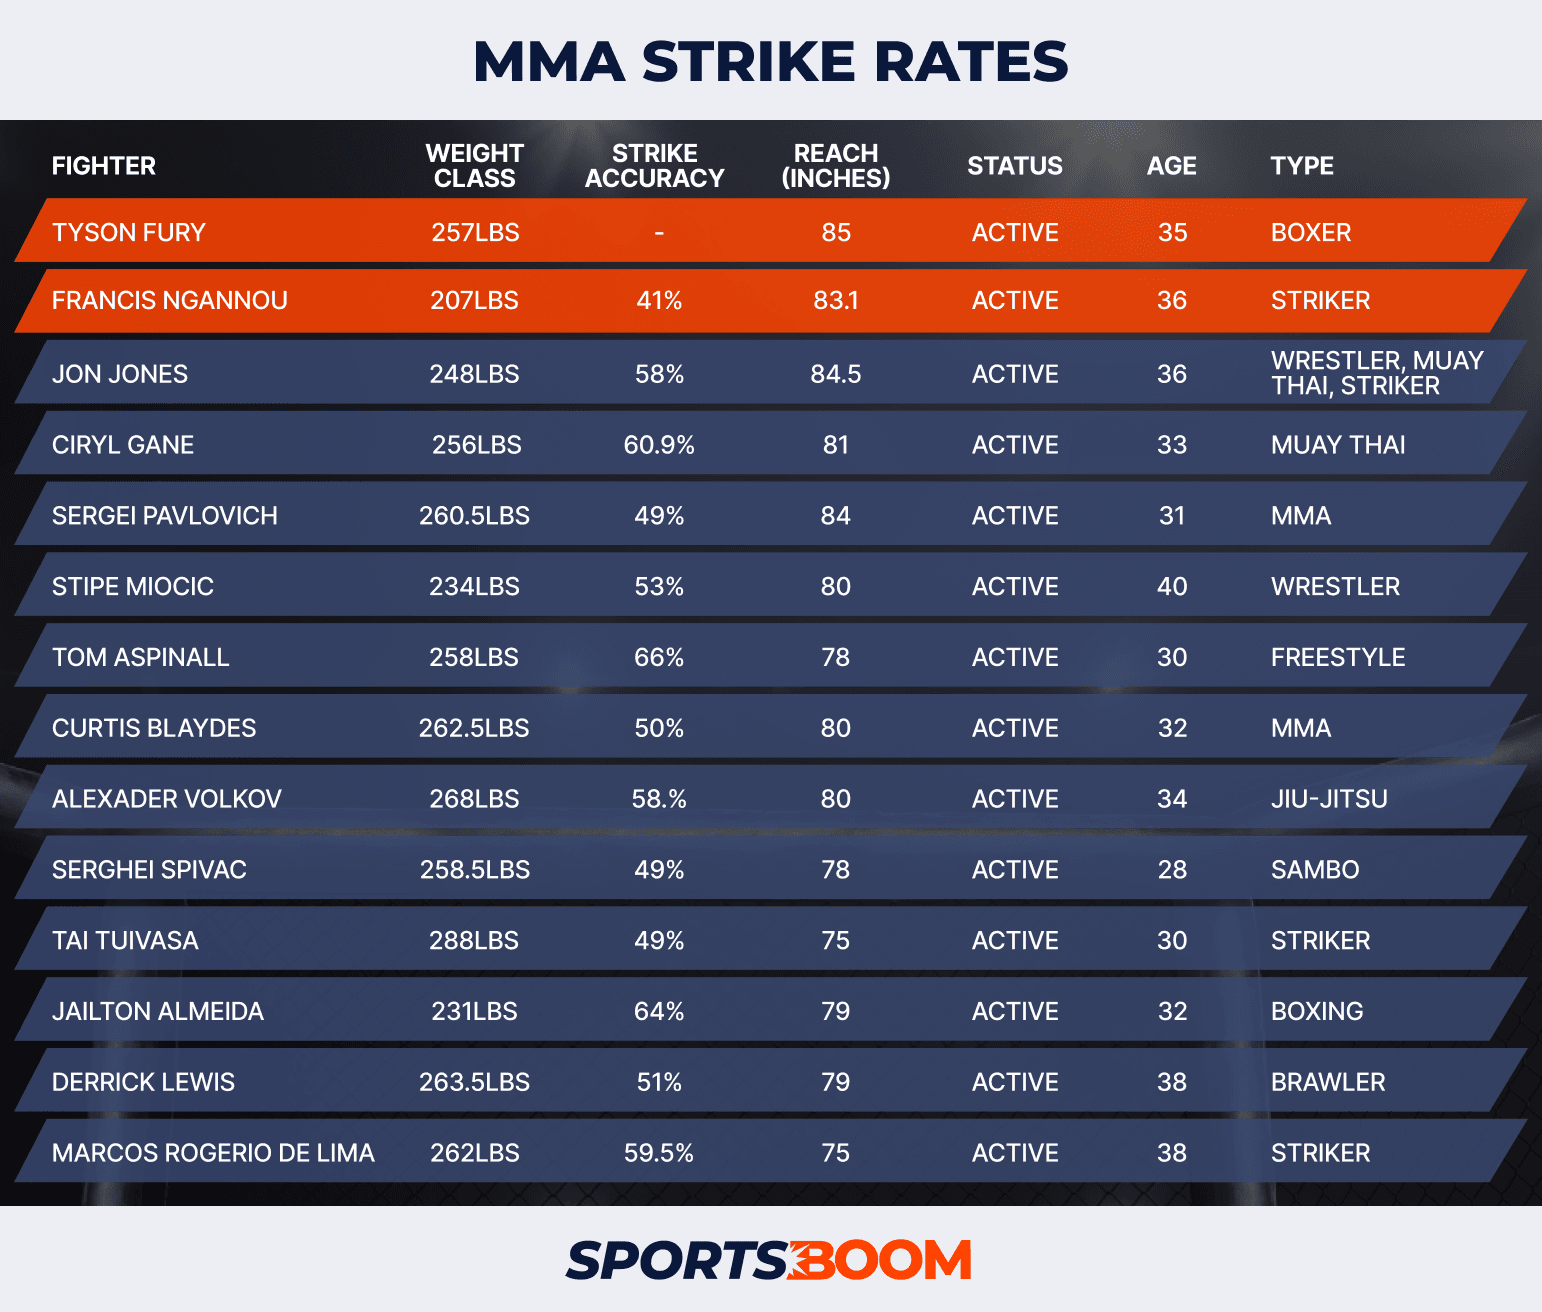 MMA Strike Rates v1.2.png